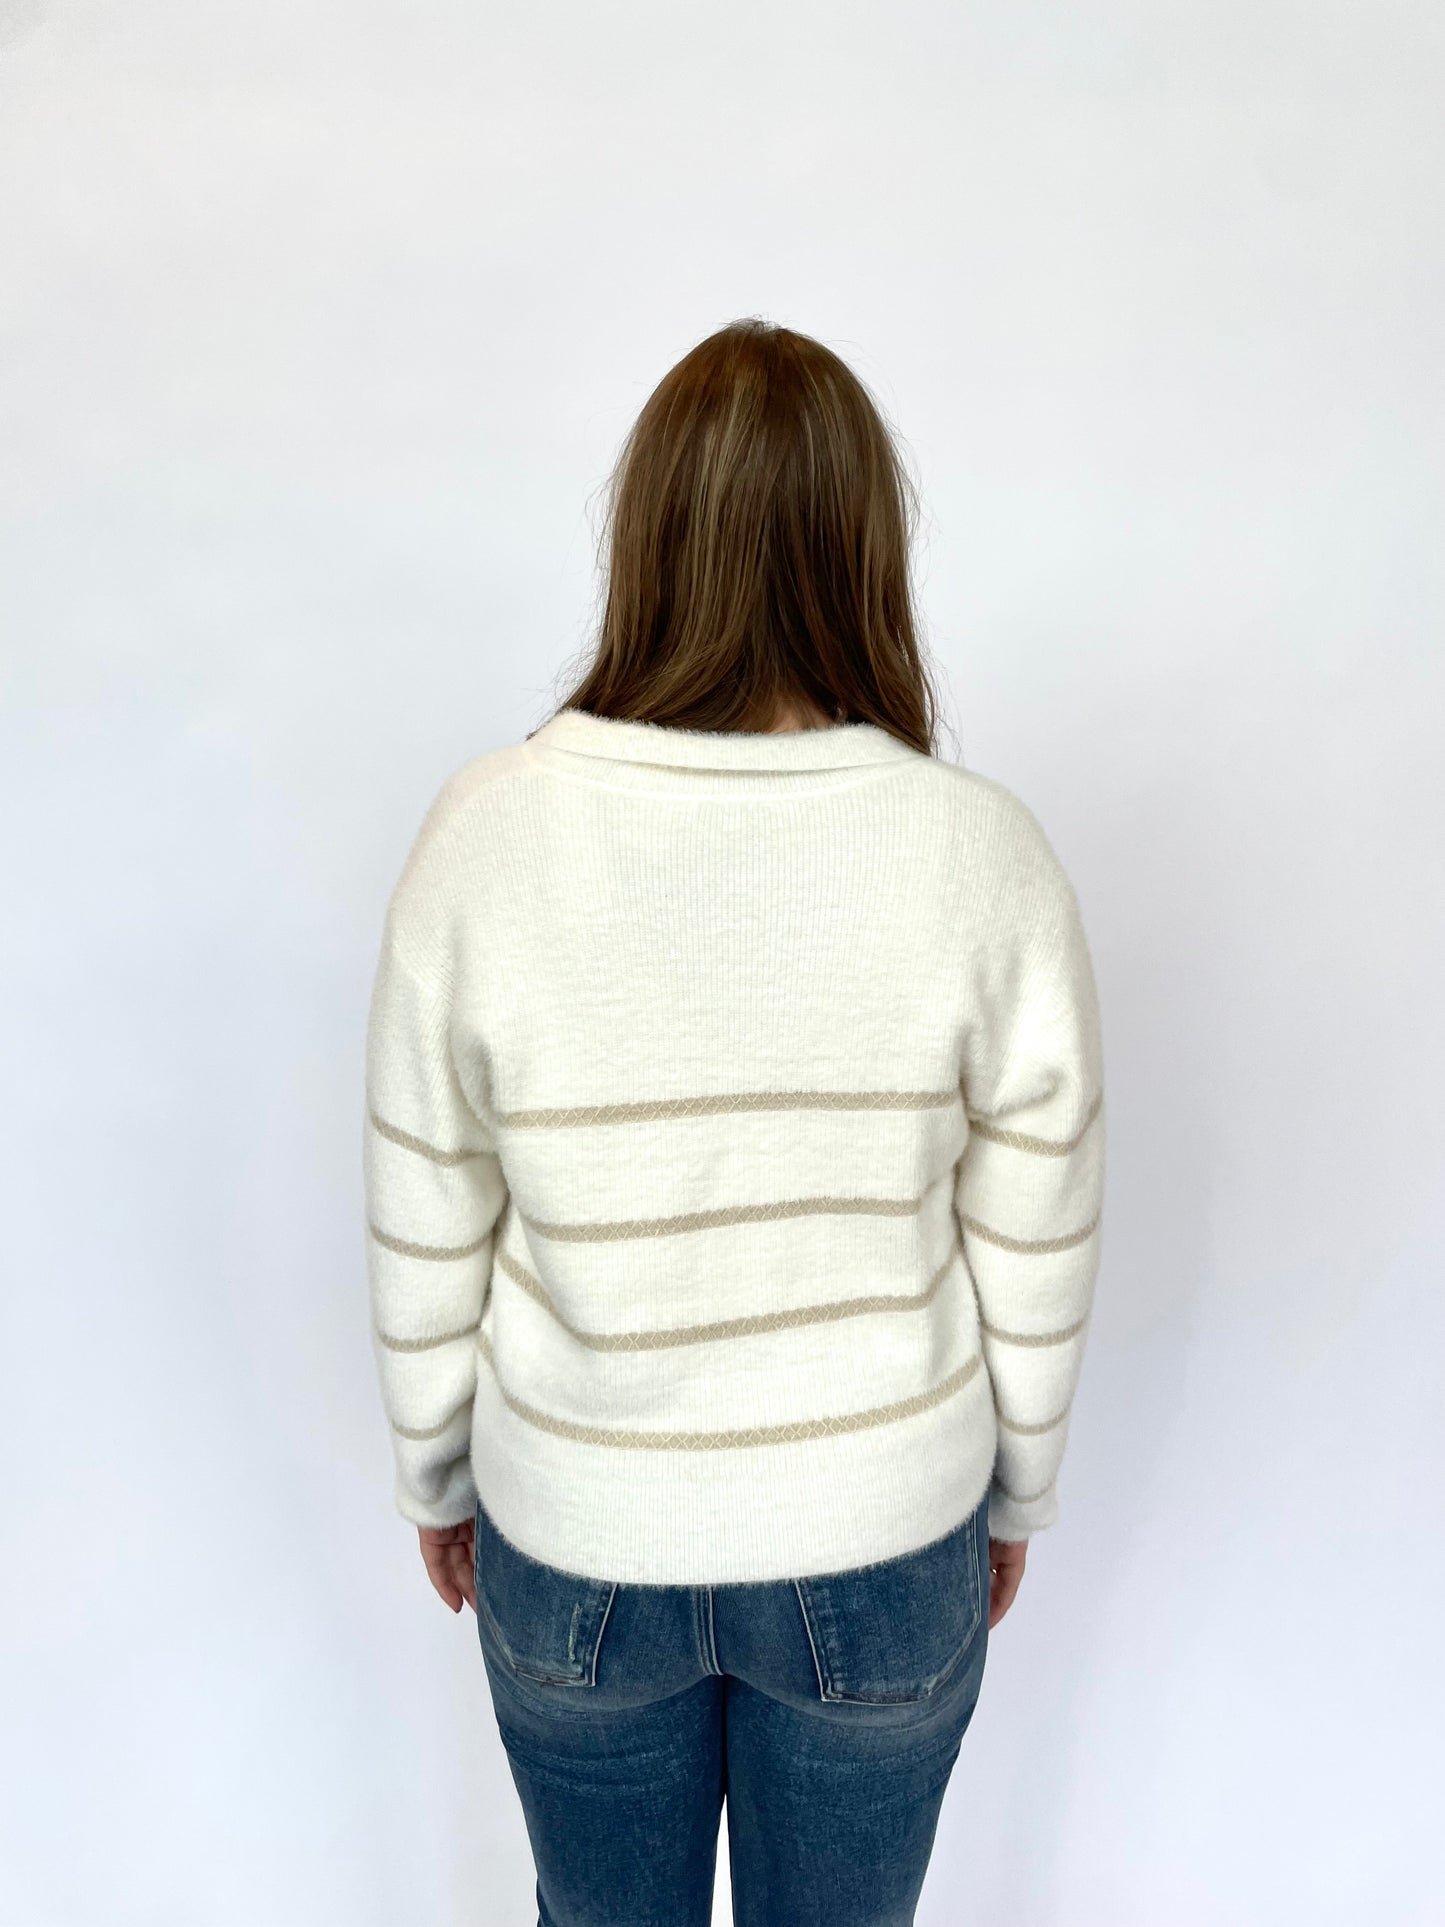 Monique Sweater